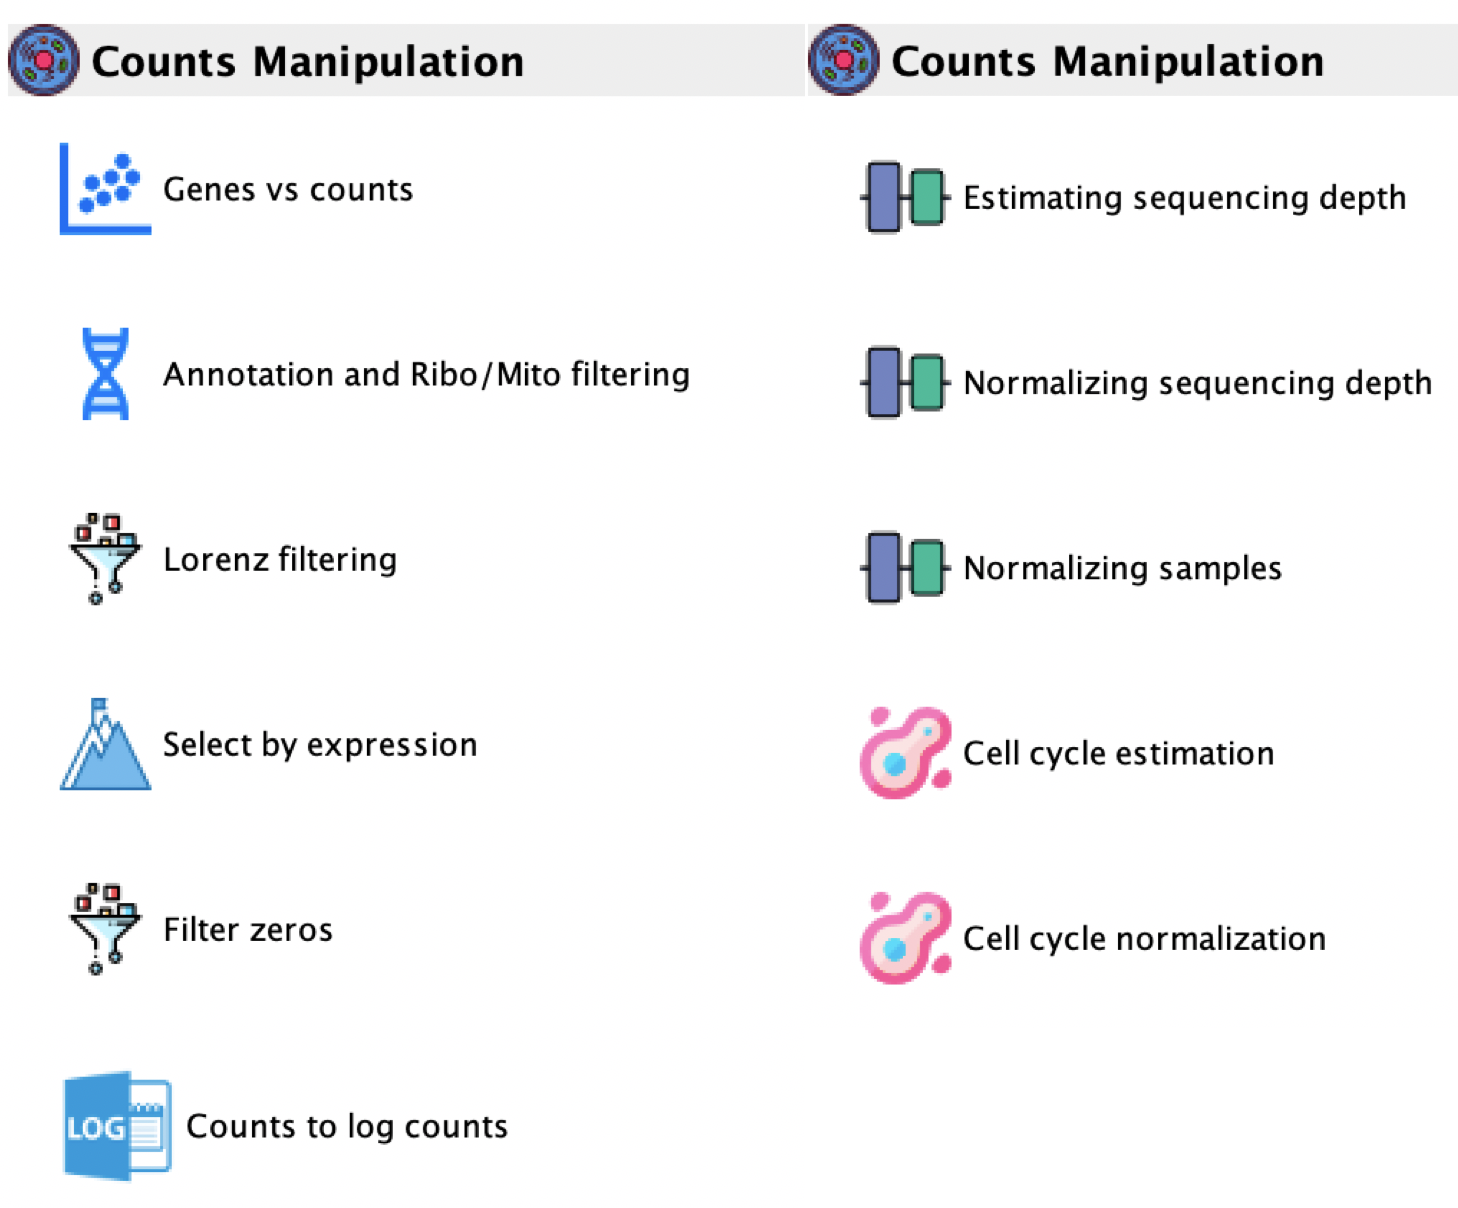 GUI: Counts manipulation menu